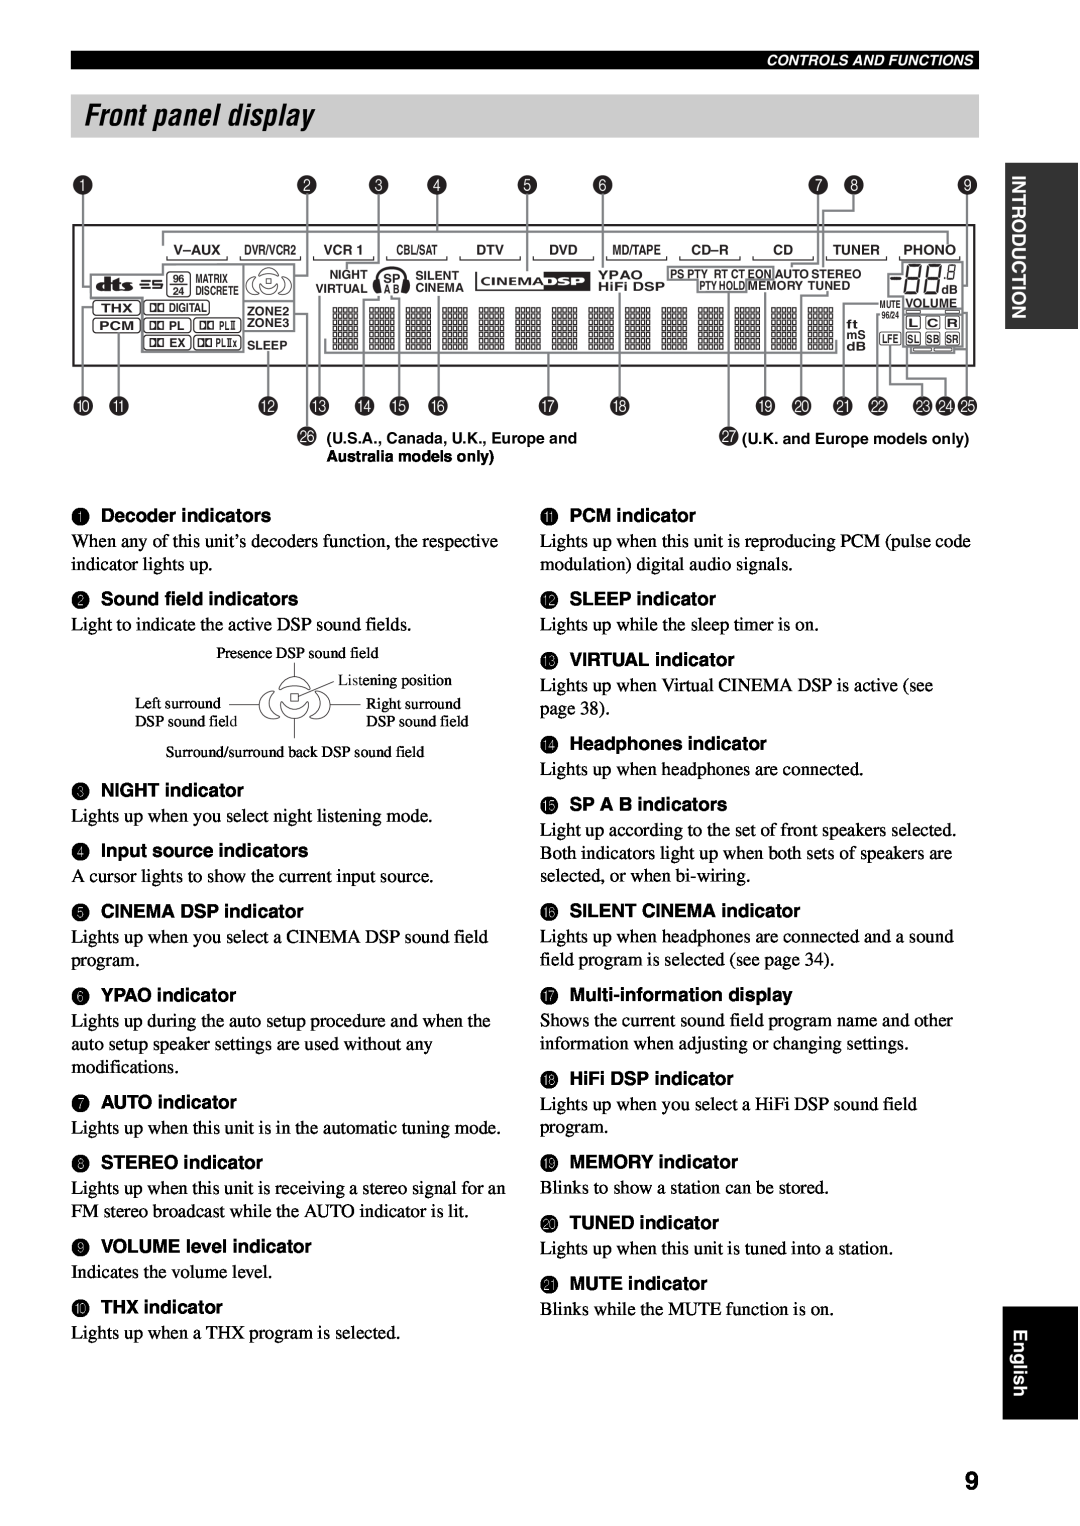 Yamaha RX-V2500 owner manual Front panel display, D E F, I J K L 